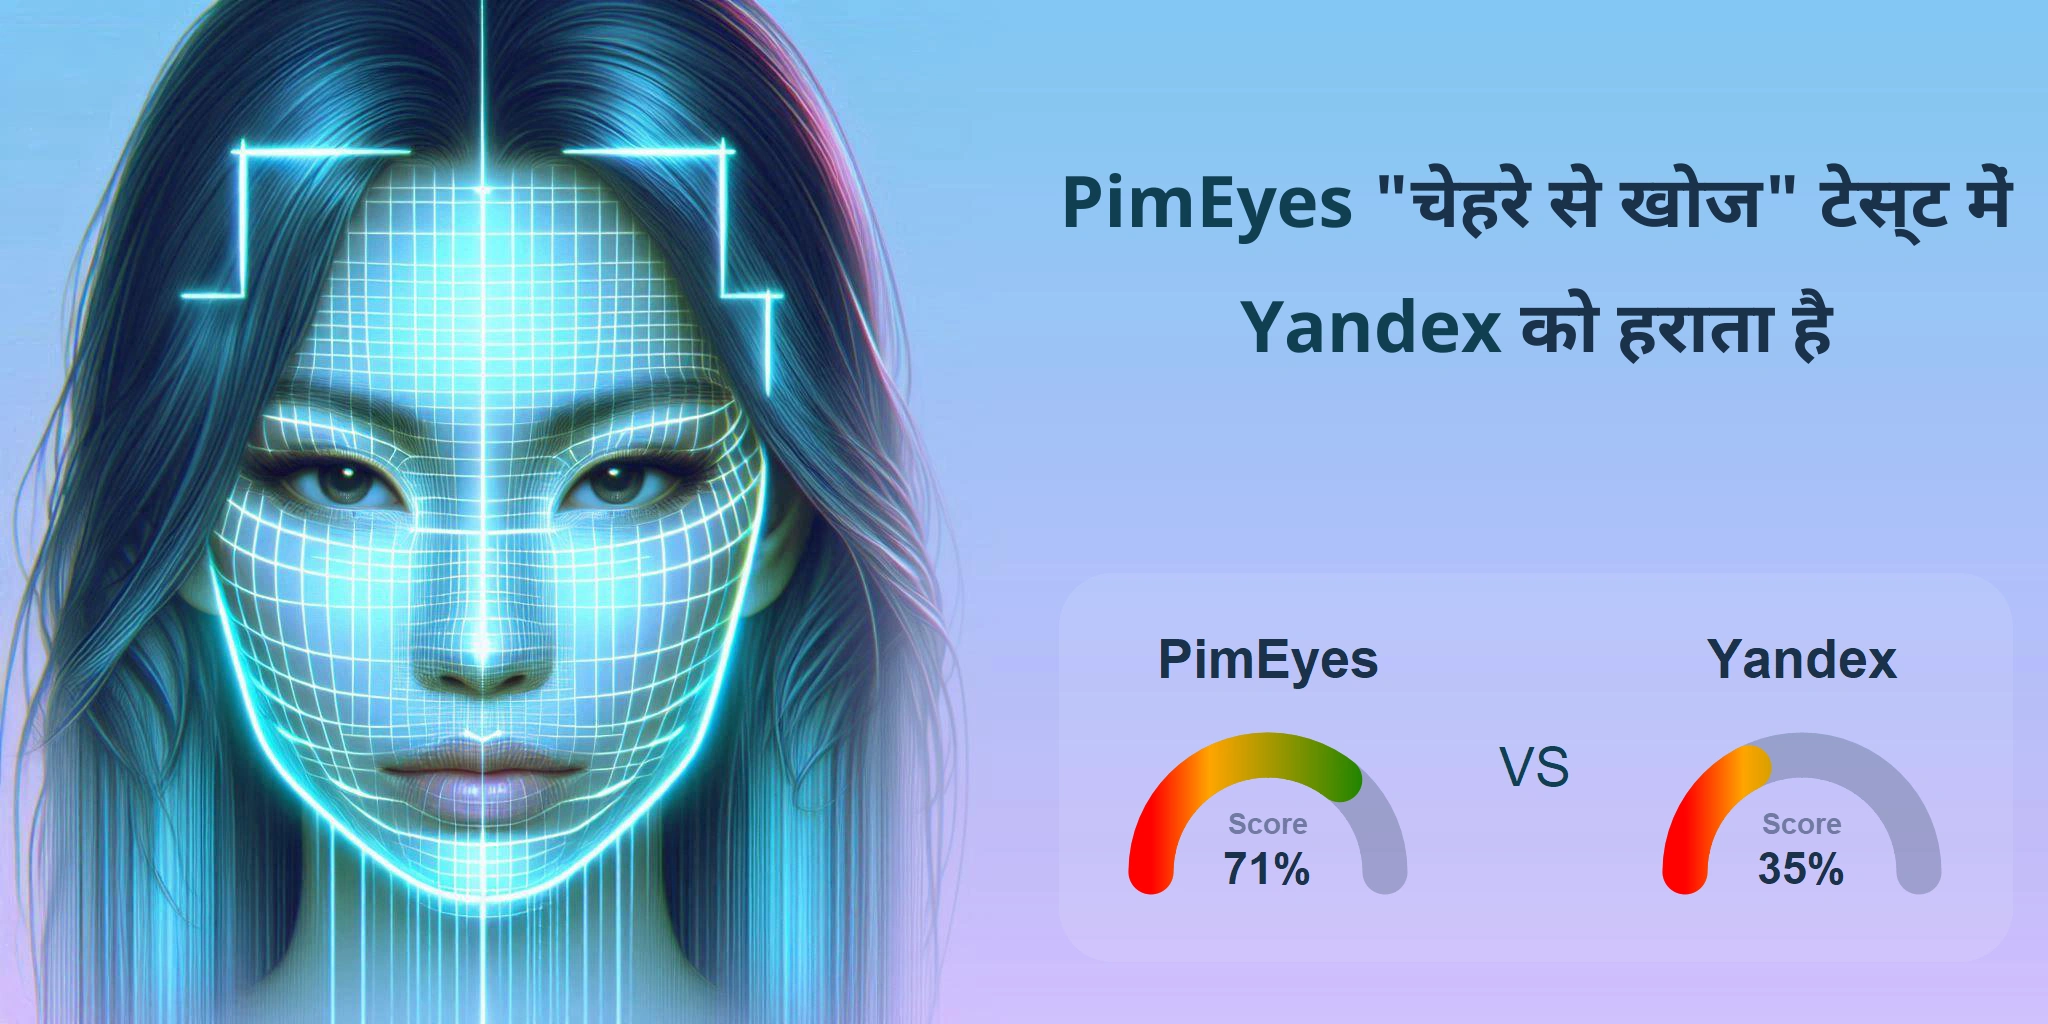 चेहरे की खोज के लिए कौन बेहतर है: <br>PimEyes या Yandex?